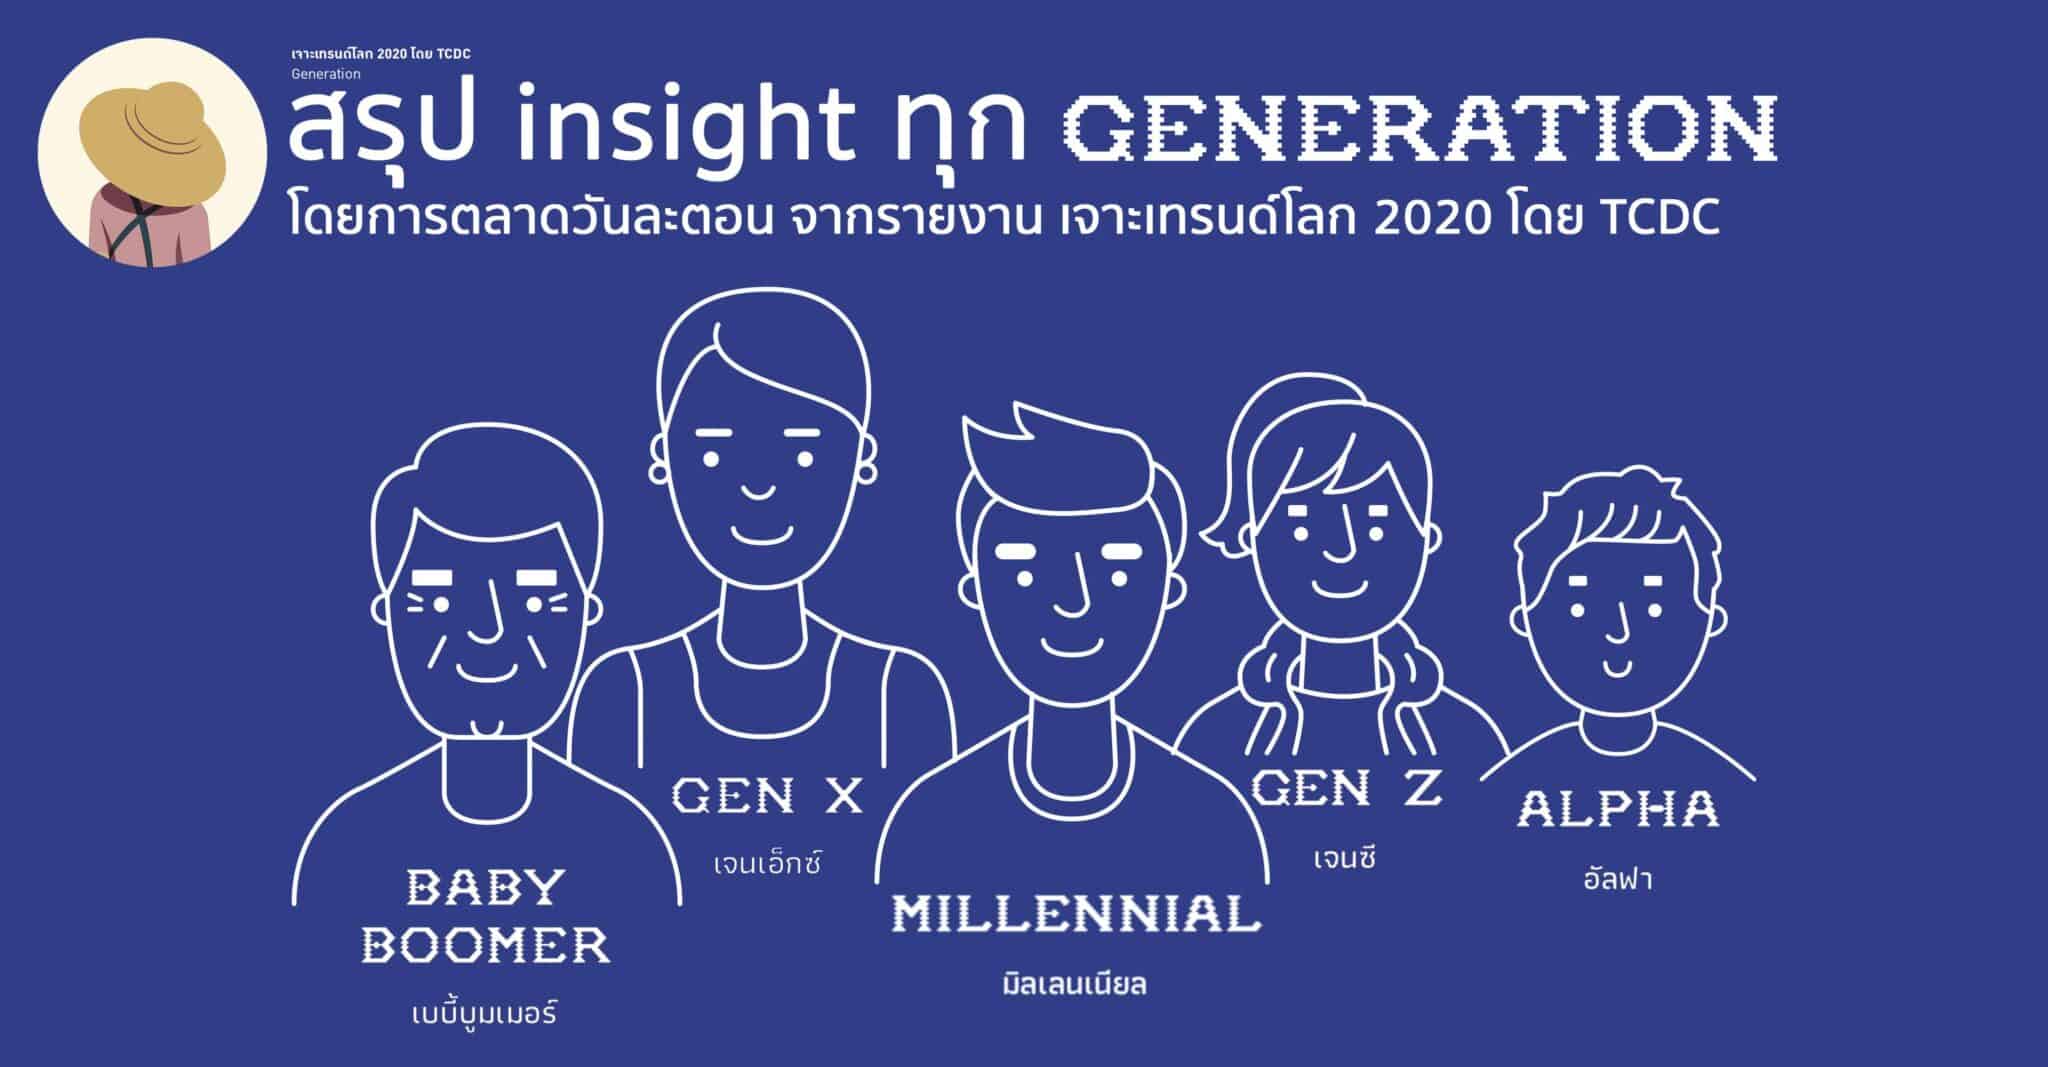 สรุป Insight ทุก Generation จากรายงานเจาะเทรนด์โลก 2020 โดย TCDC